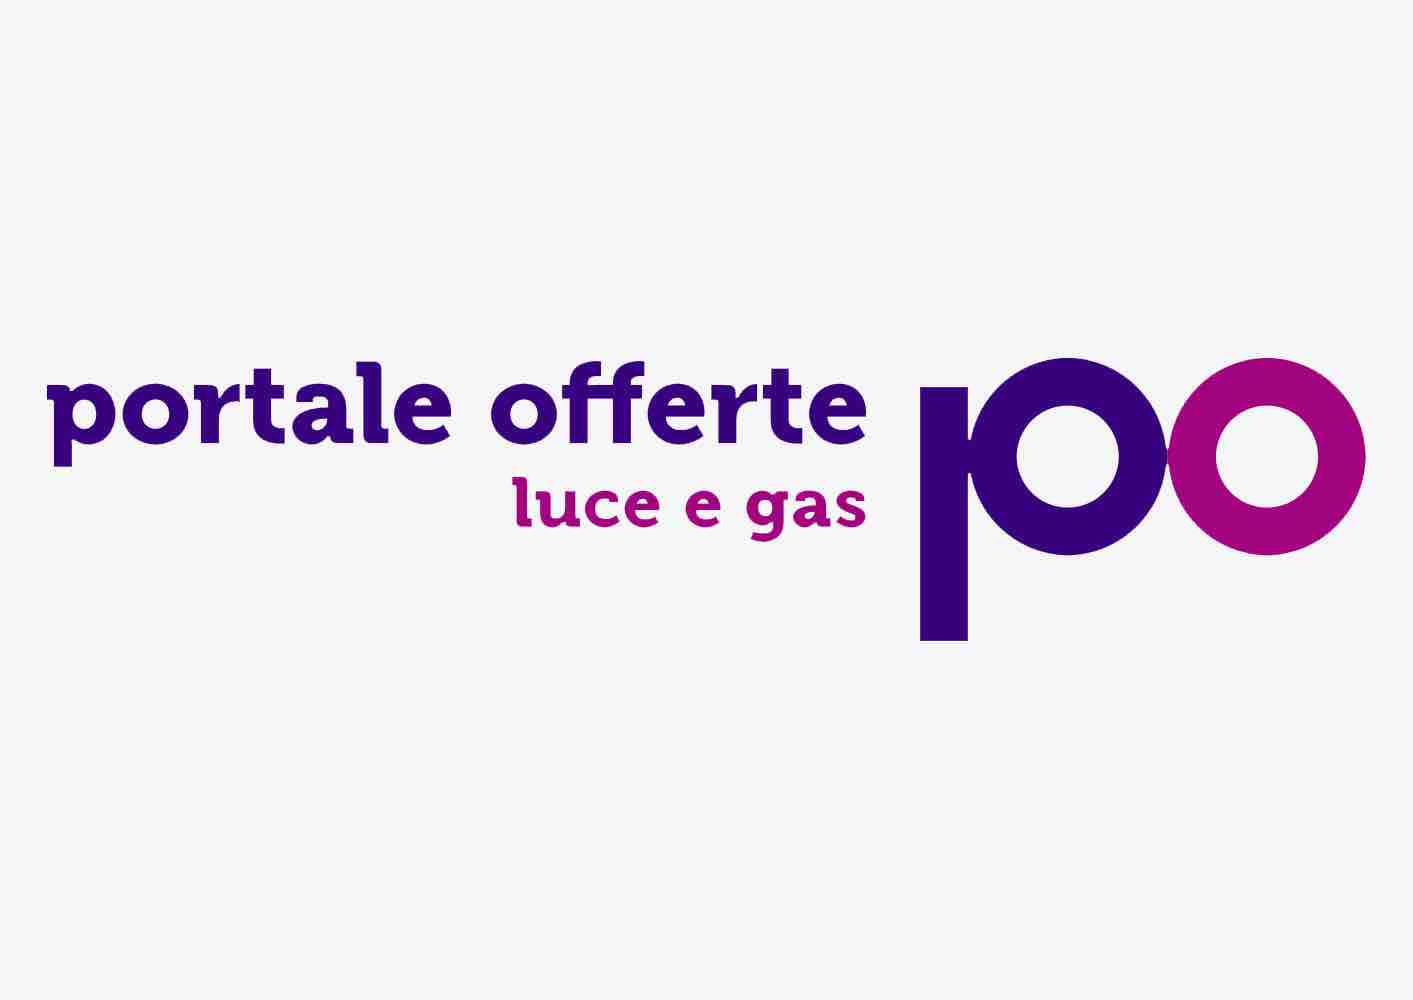 Bollette luce e gas: portale offerte, come funziona e tariffe luglio 2019